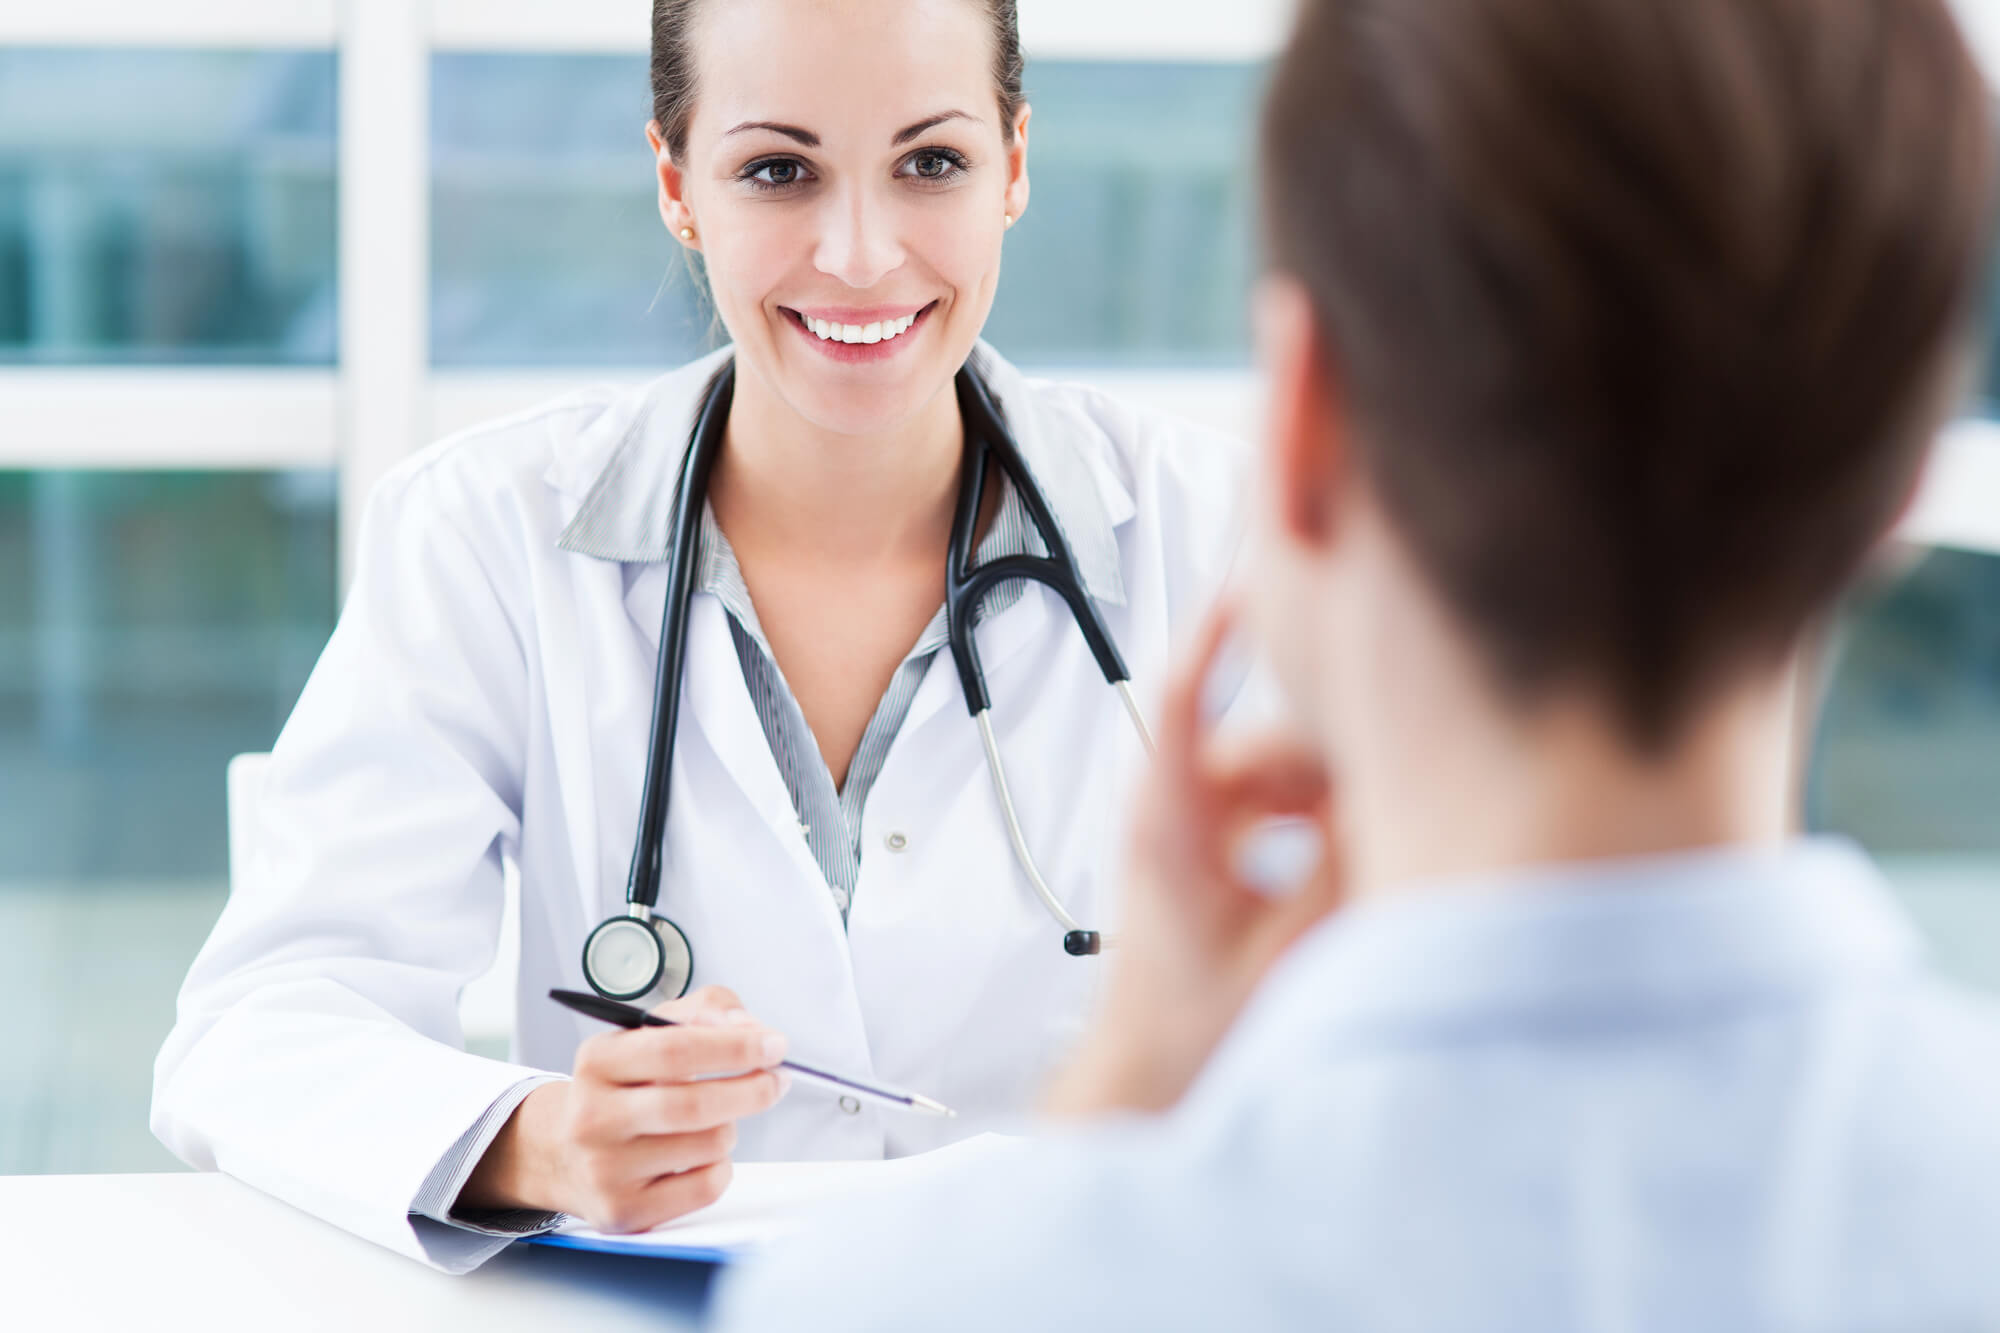 Aproveite seu médico: confira essas dicas para uma boa consulta médica